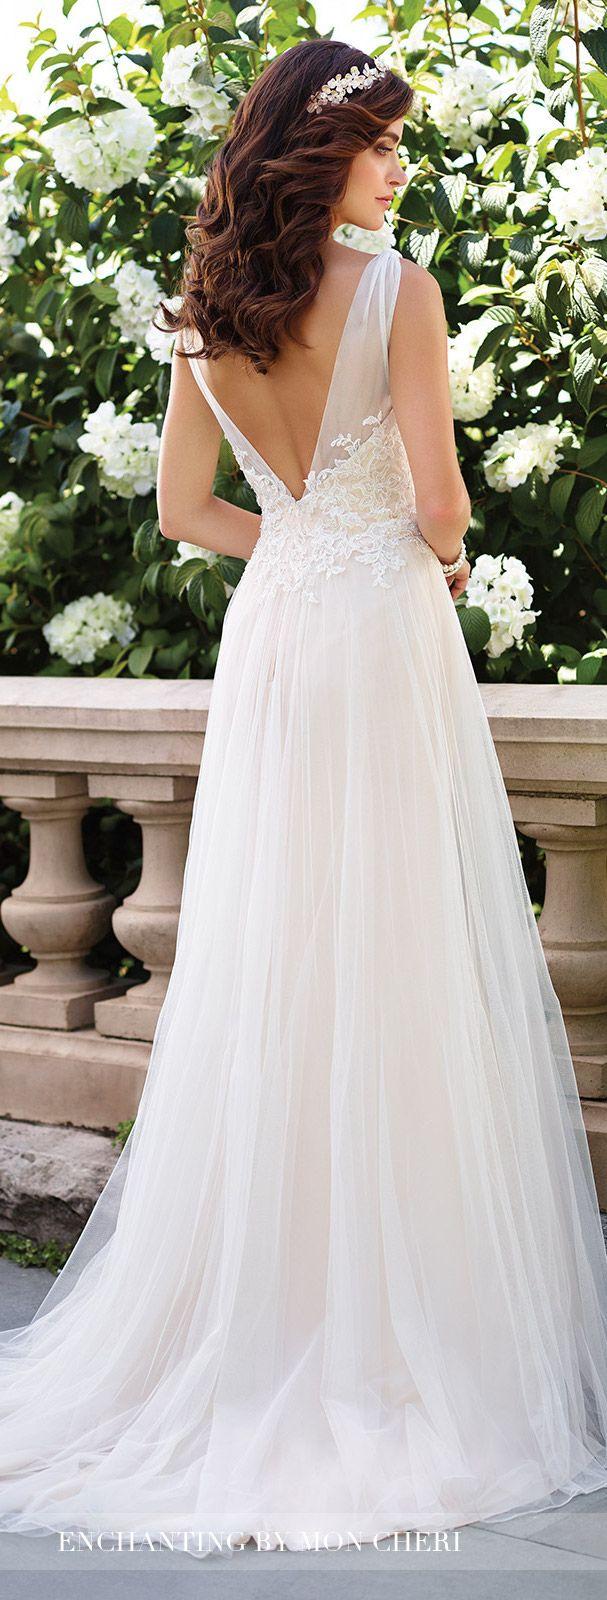 زفاف - Tulle And Lace A-Line Wedding Dress- 117176- Enchanting By Mon Cheri